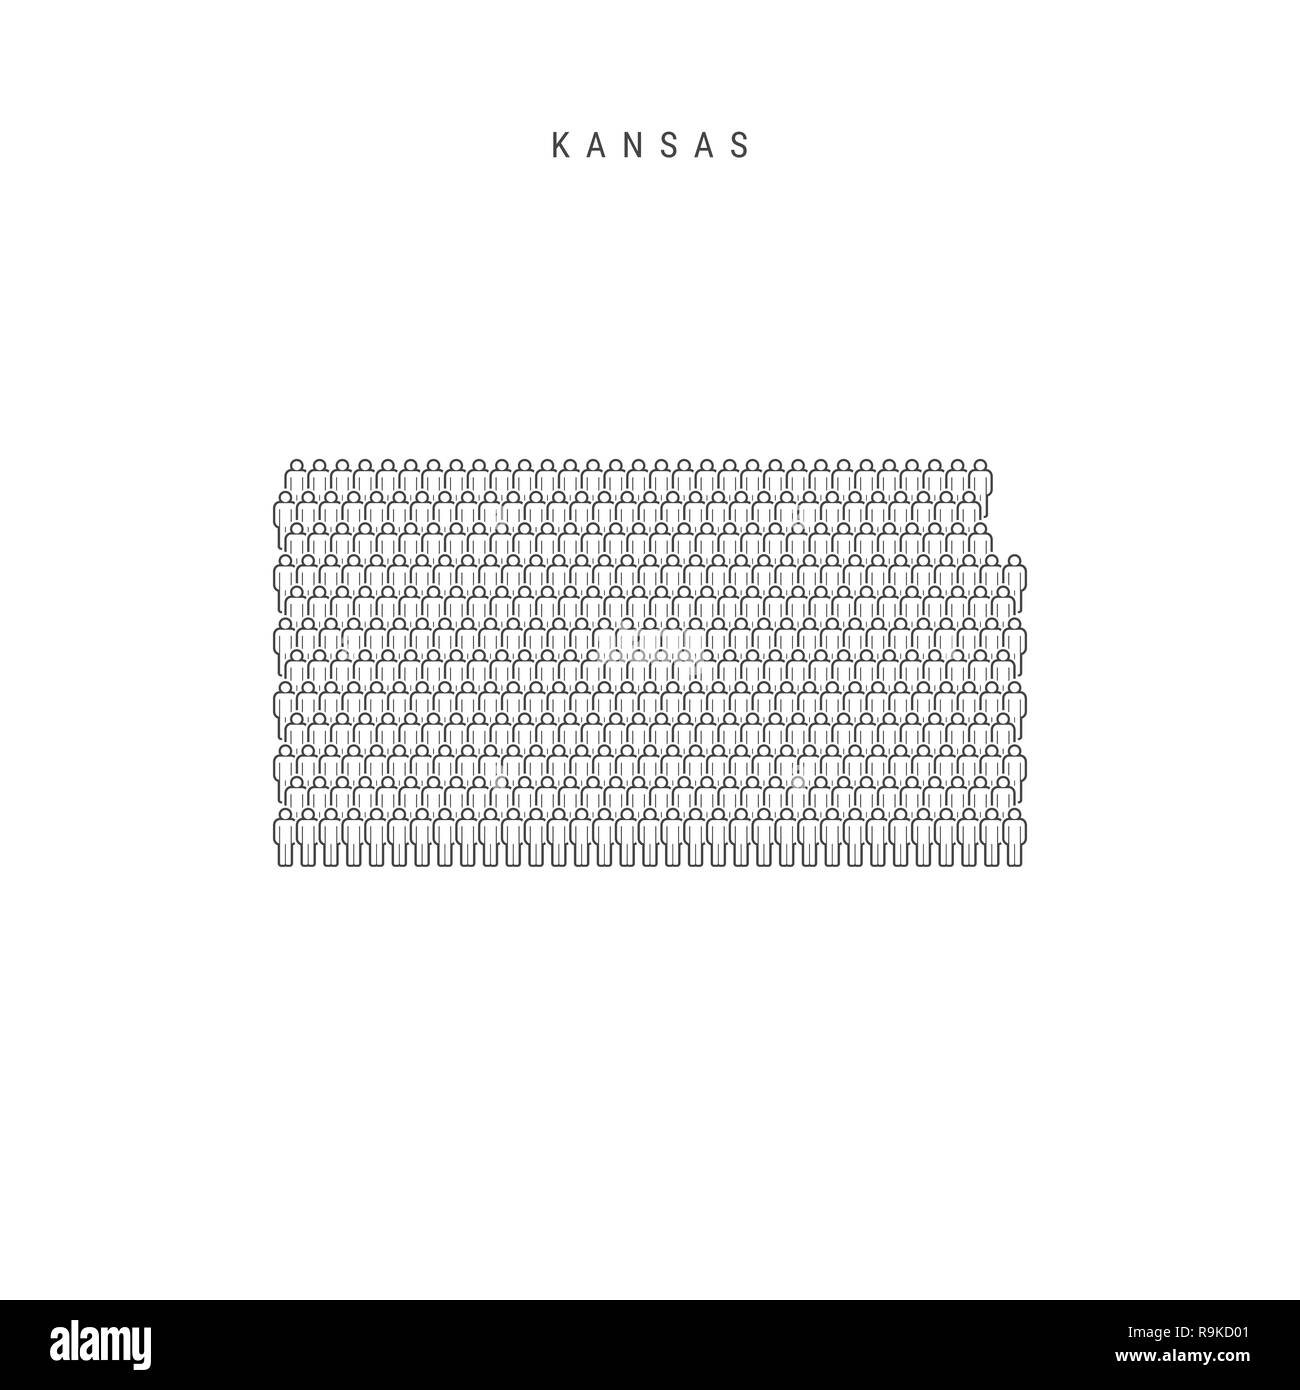 Leute Karte von Kansas, USA. Stilisierte Silhouette, Leute in der Form einer Karte von Kansas. Kansas Bevölkerung. Abbildung isoliert auf weißem B Stockfoto